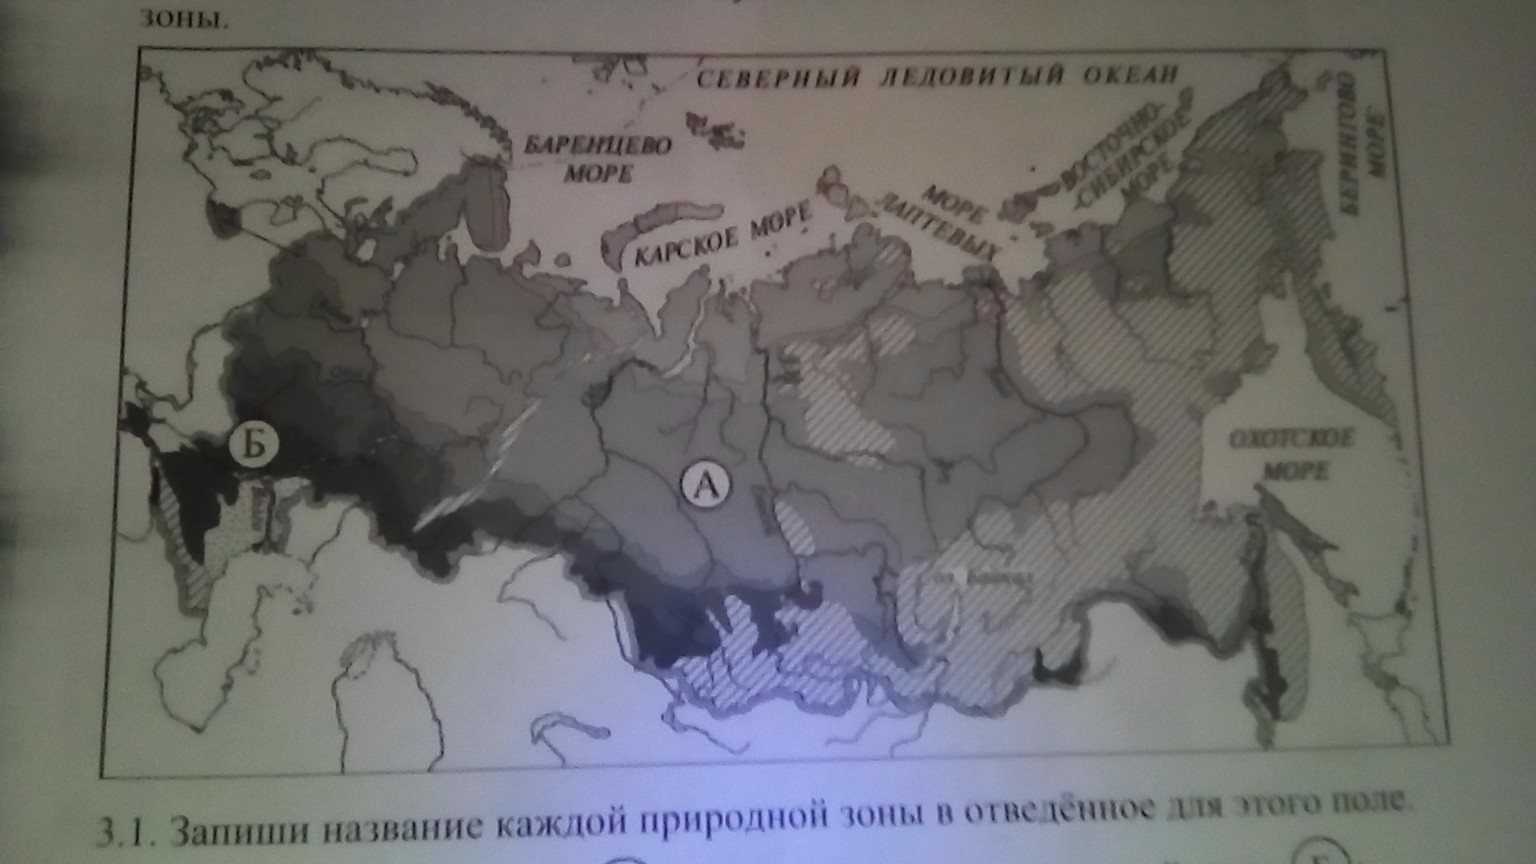 Карта впр зоны окружающий мир ответы россии. Запиши название каждой природной зоны. Запиши название каждой природной зоны в отведённое. Запиши названия природных зон. Запиши название каждой природной зоны в отведённое для этого поле.